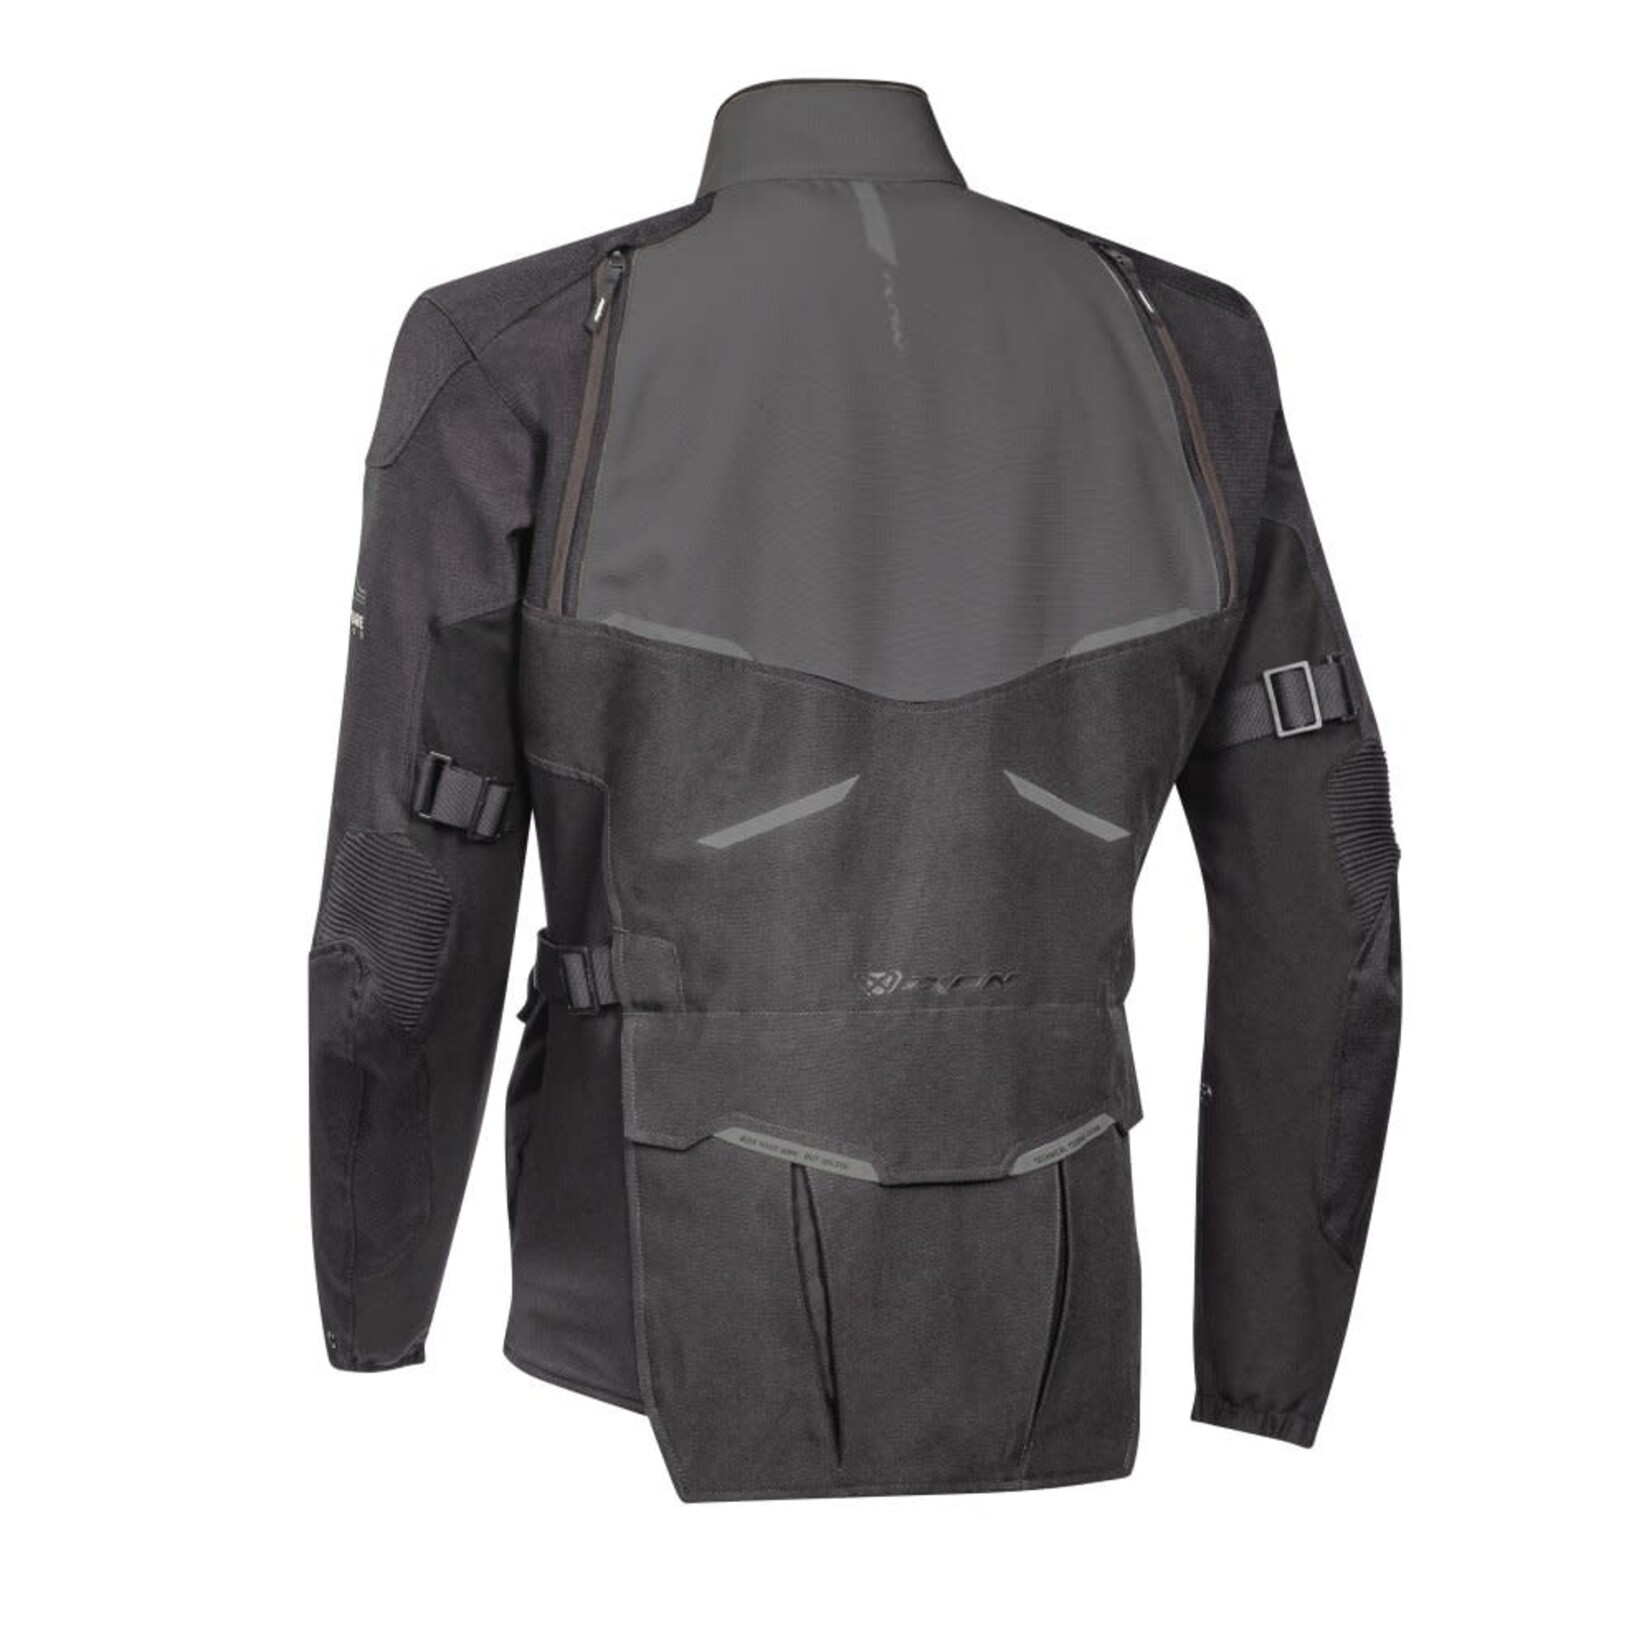 Ixon Ixon jacket textile eddas black/anthracite